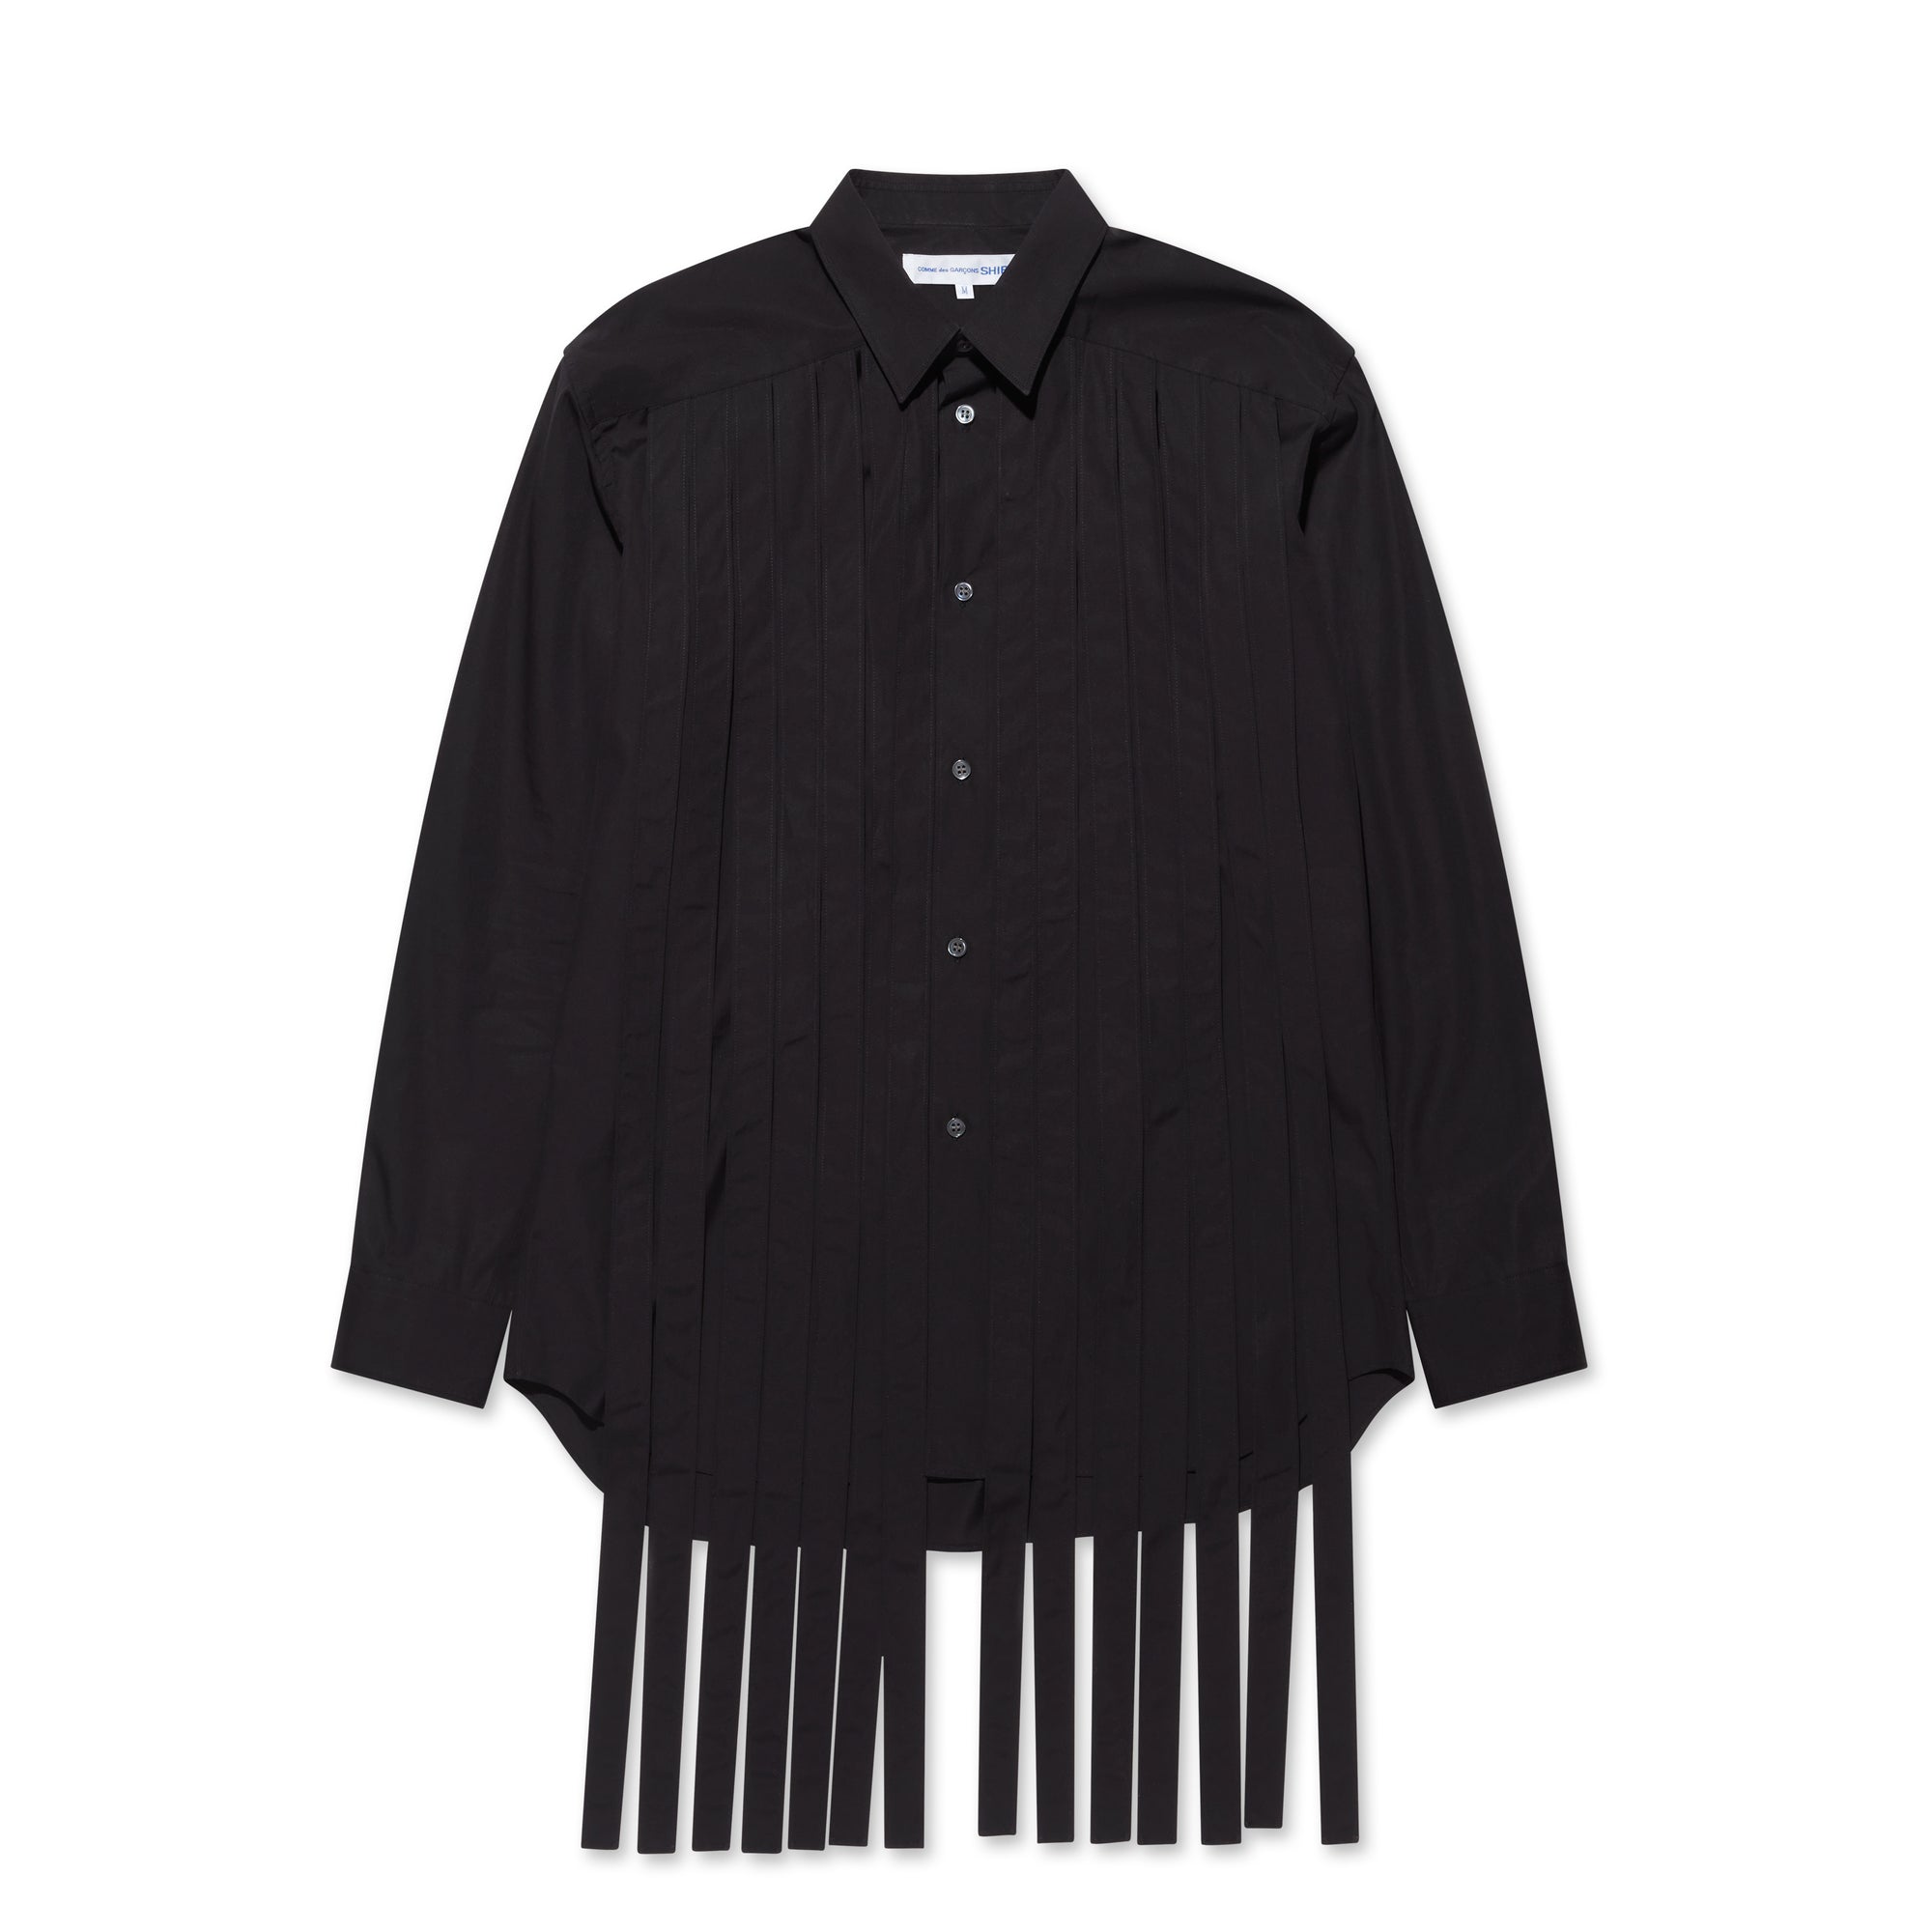 CDG Shirt - Men’s Pleated Shirt - (Black) view 5